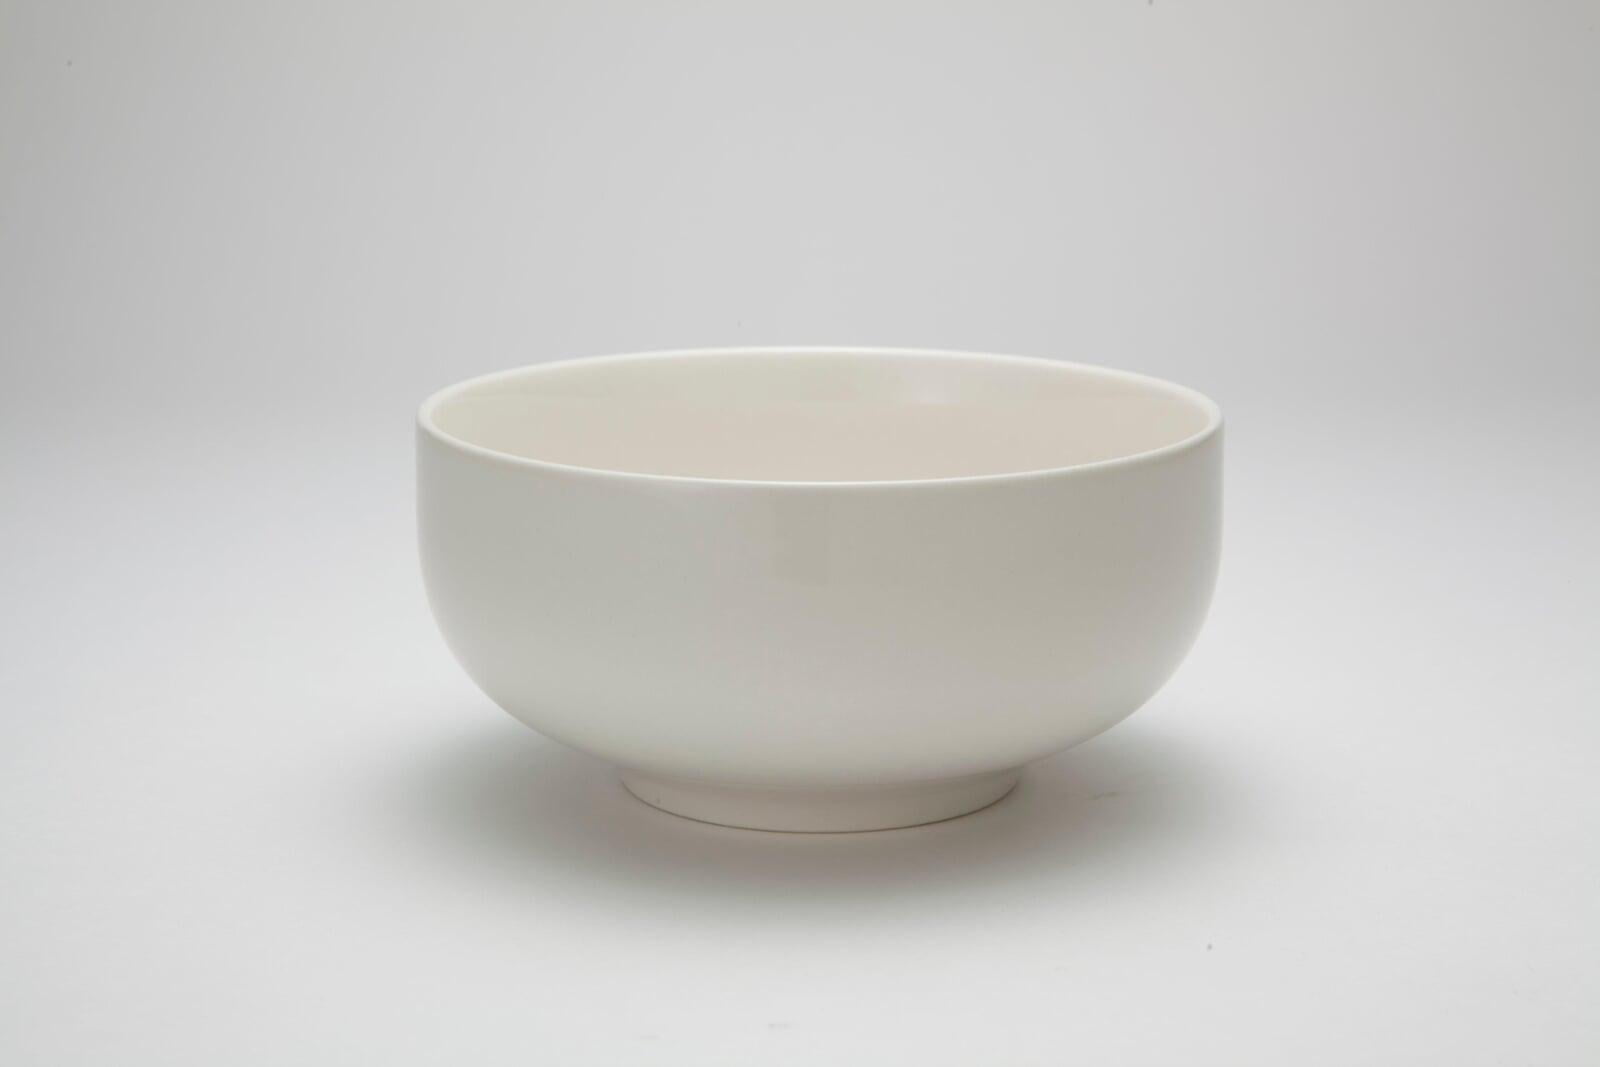 食器 - 洋食器 盛り皿 取り皿 お椀型 無地・白地 直径13cm 高さ6cm